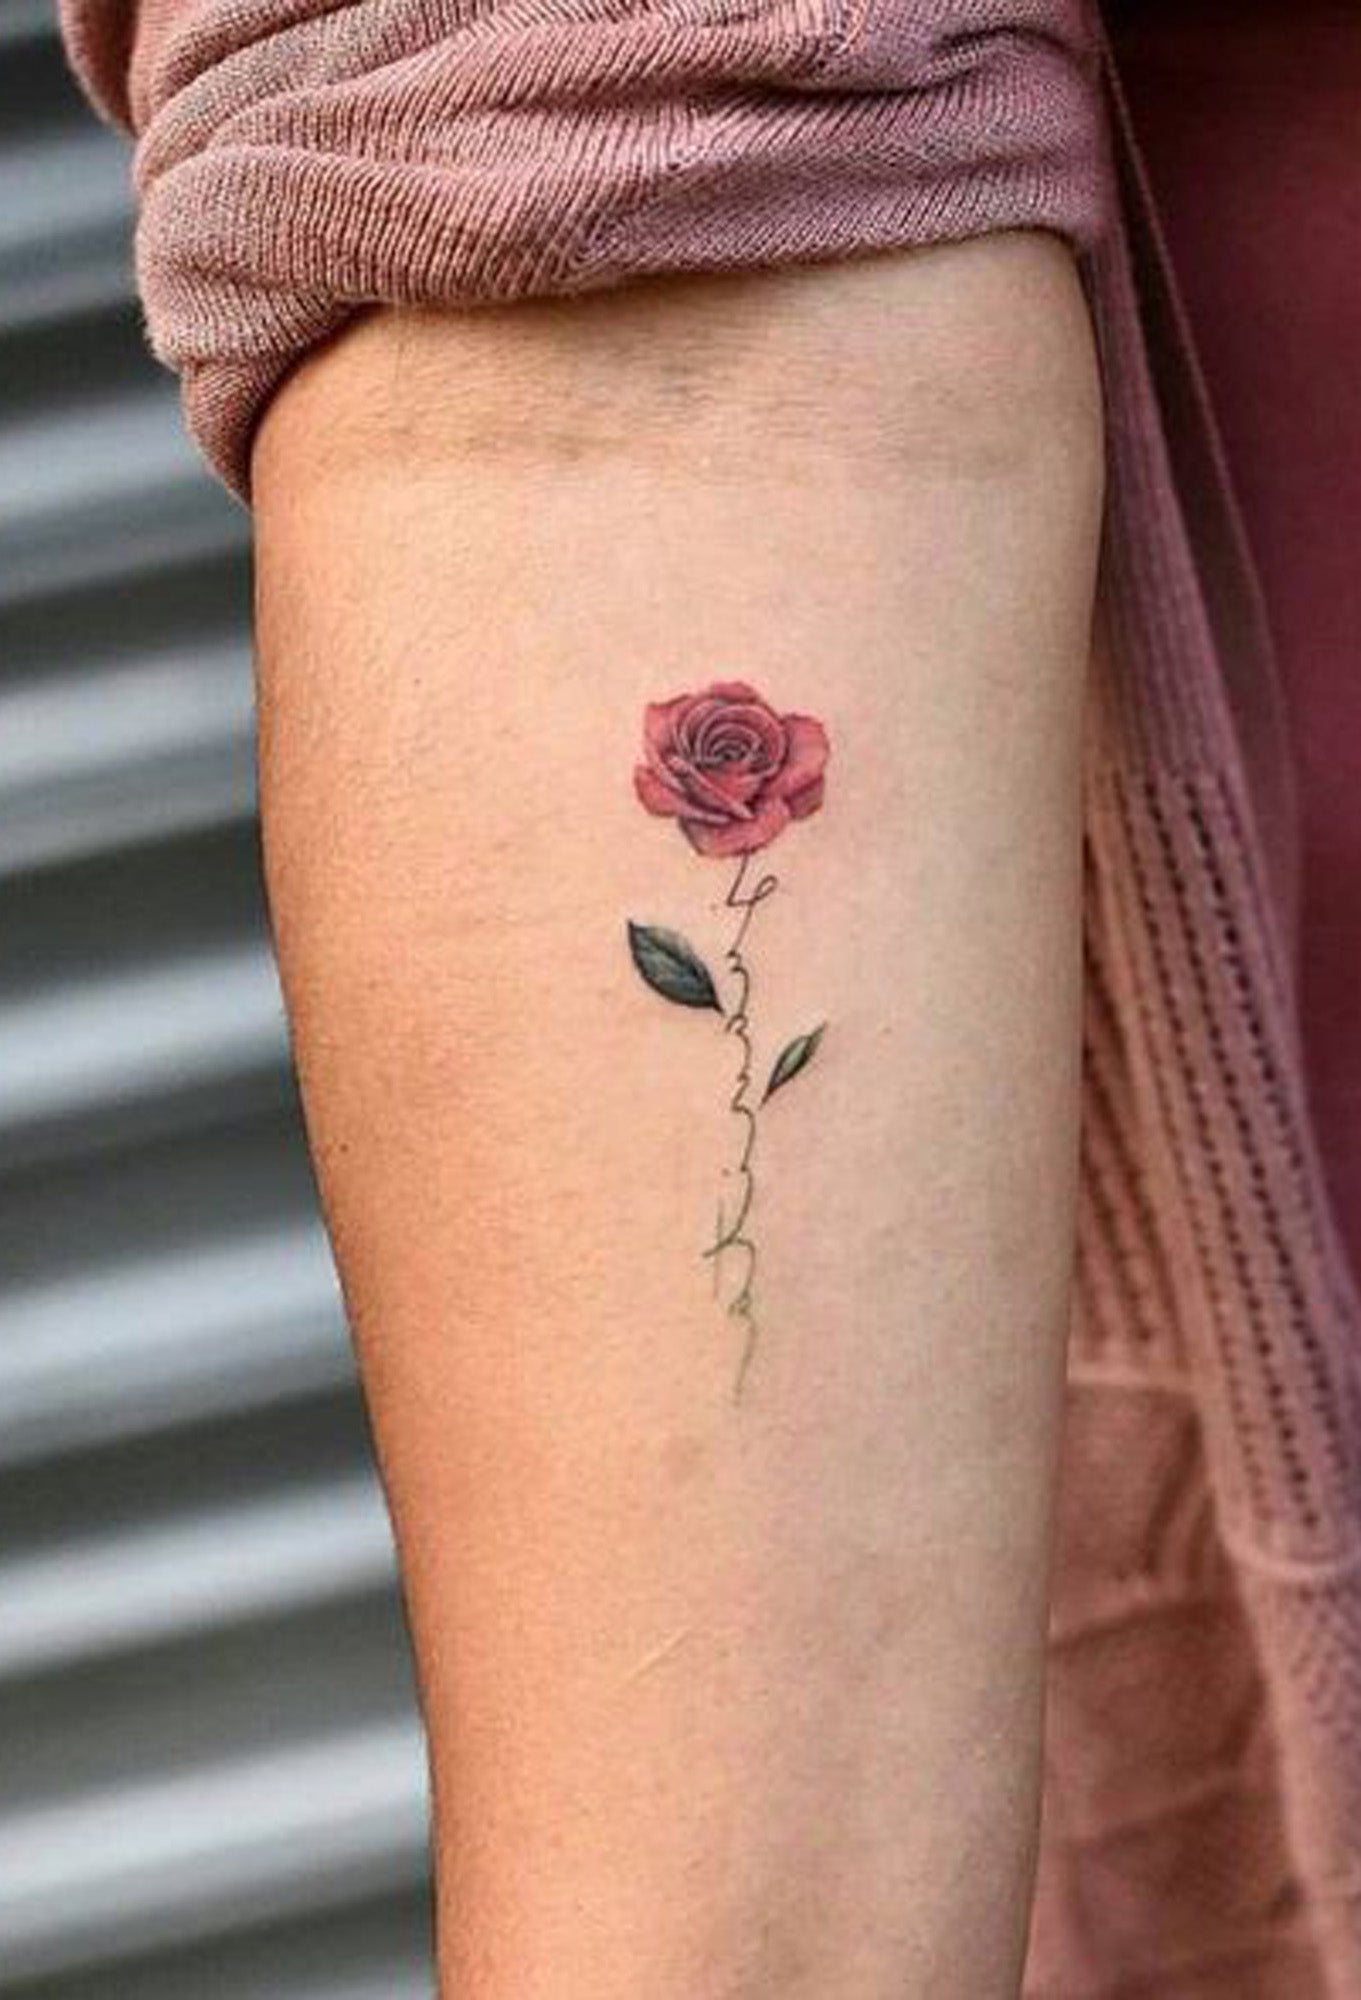 Watercolor Small Cute Forearm Rose Forearm Tattoo Ideas for Women -  Ideas de tatuaje de flor de antebrazo pequeño para mujeres - www.MyBodiArt.com